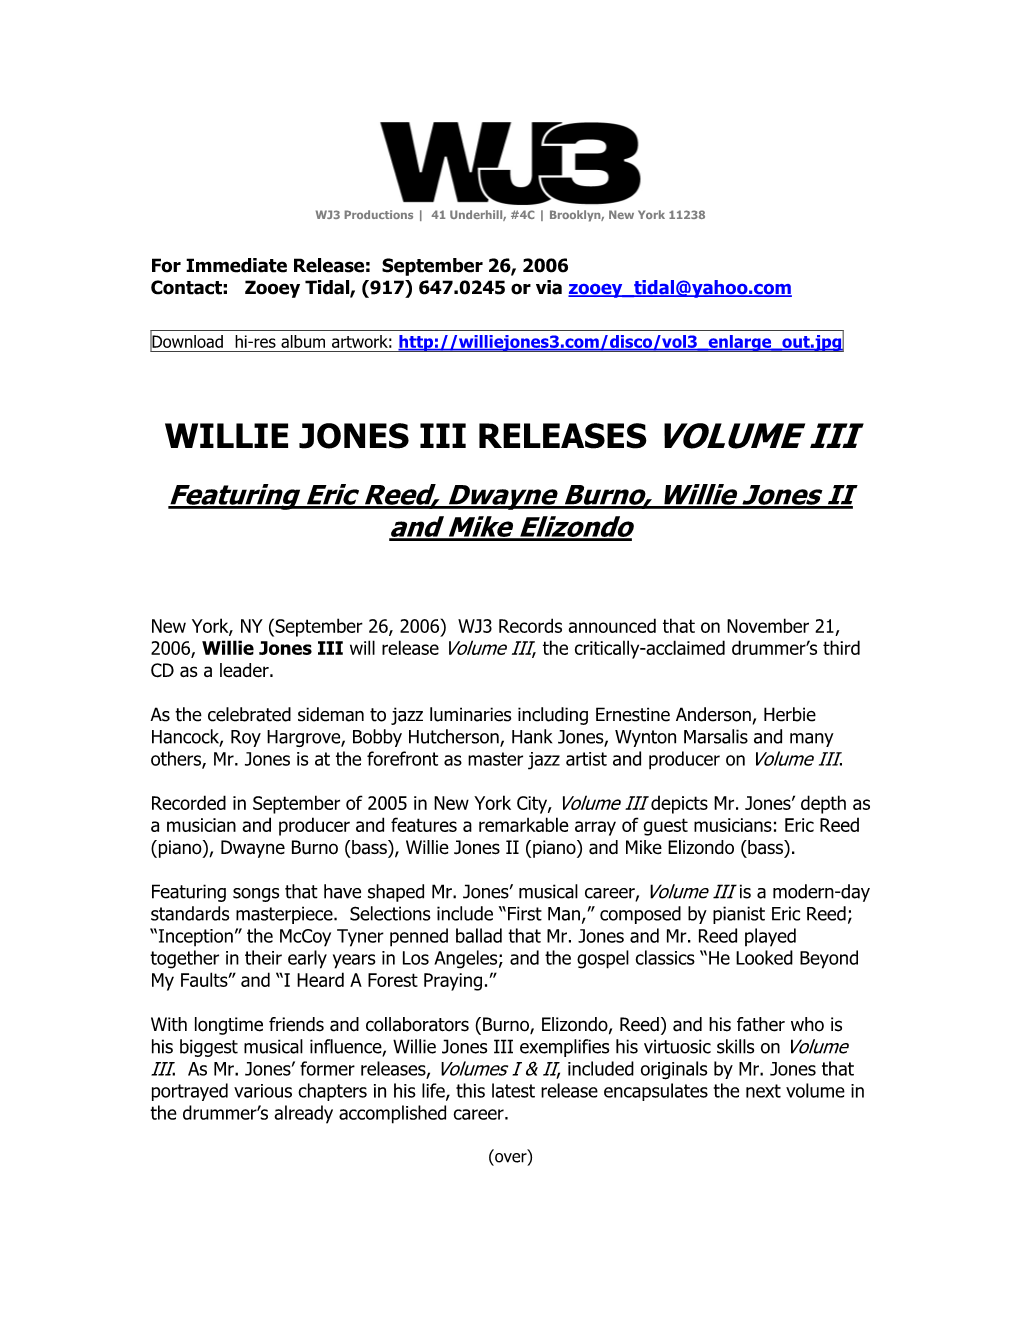 Willie Jones Iii Releases Volume Iii